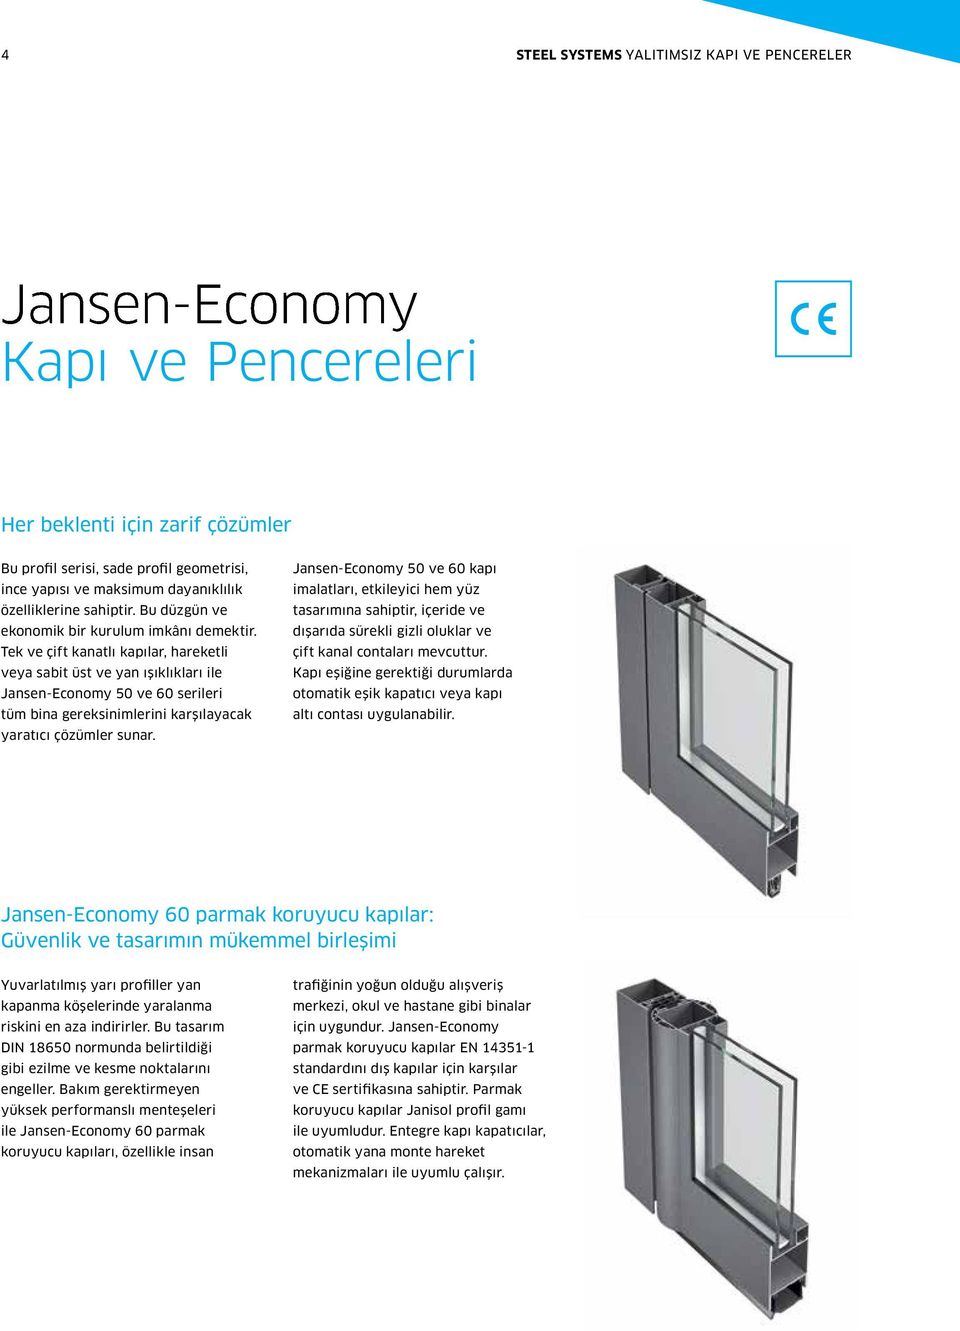 Tek ve çift kanatlı kapılar, hareketli veya sabit üst ve yan ışıklıkları ile Jansen-Economy ve serileri tüm bina gereksinimlerini karşılayacak yaratıcı çözümler sunar.